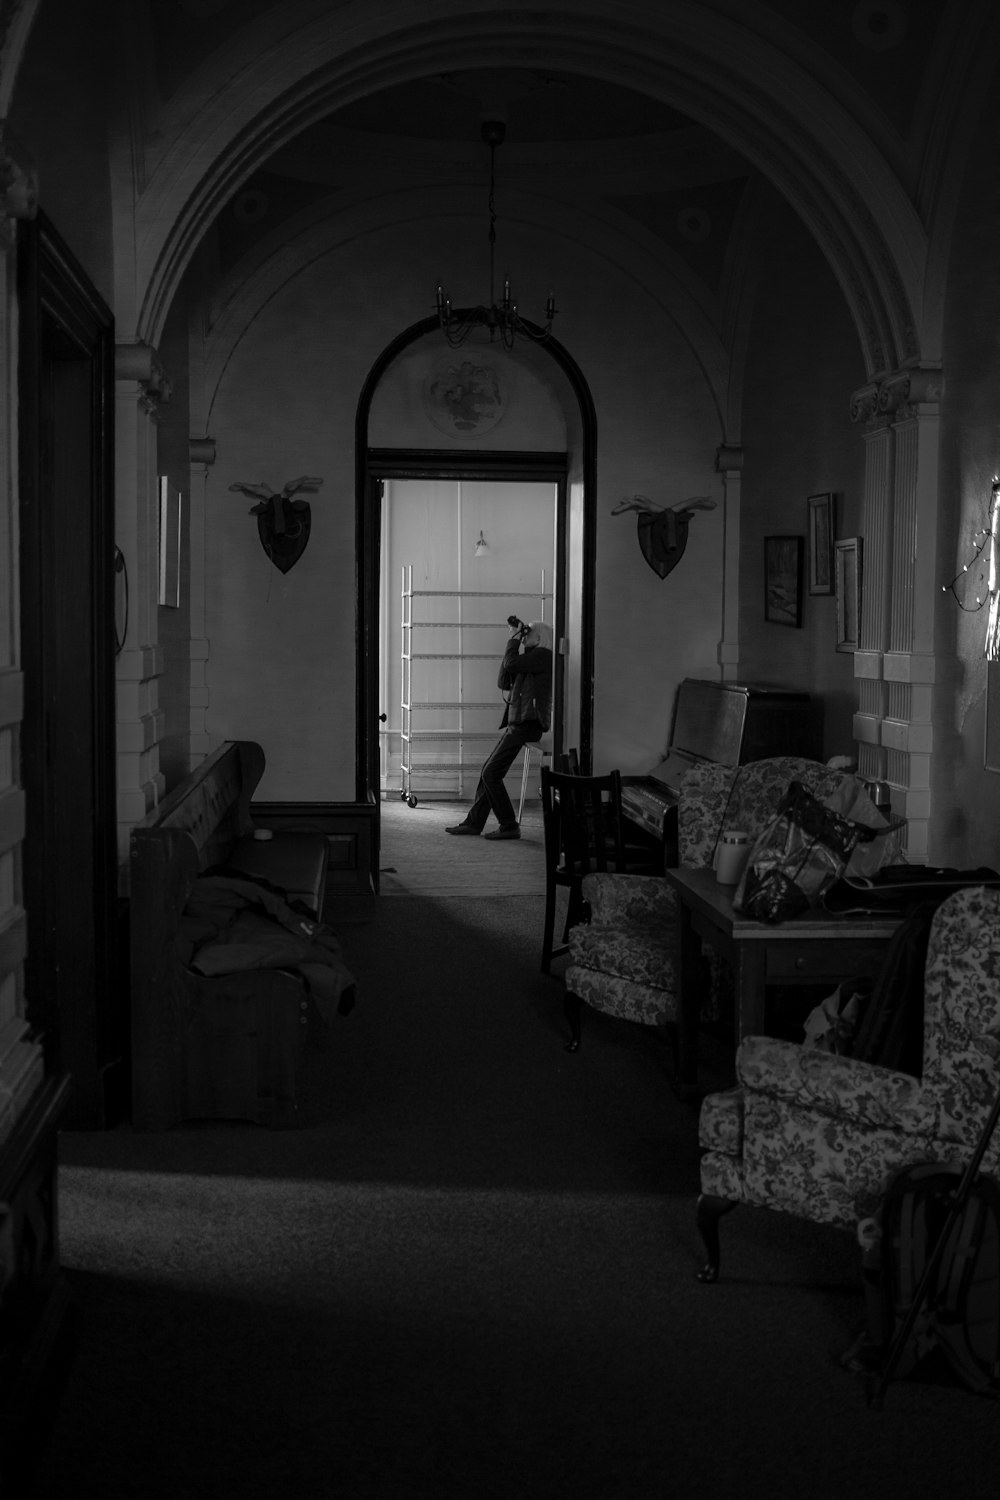 방으로 걸어 들어가는 사람의 흑백 사진